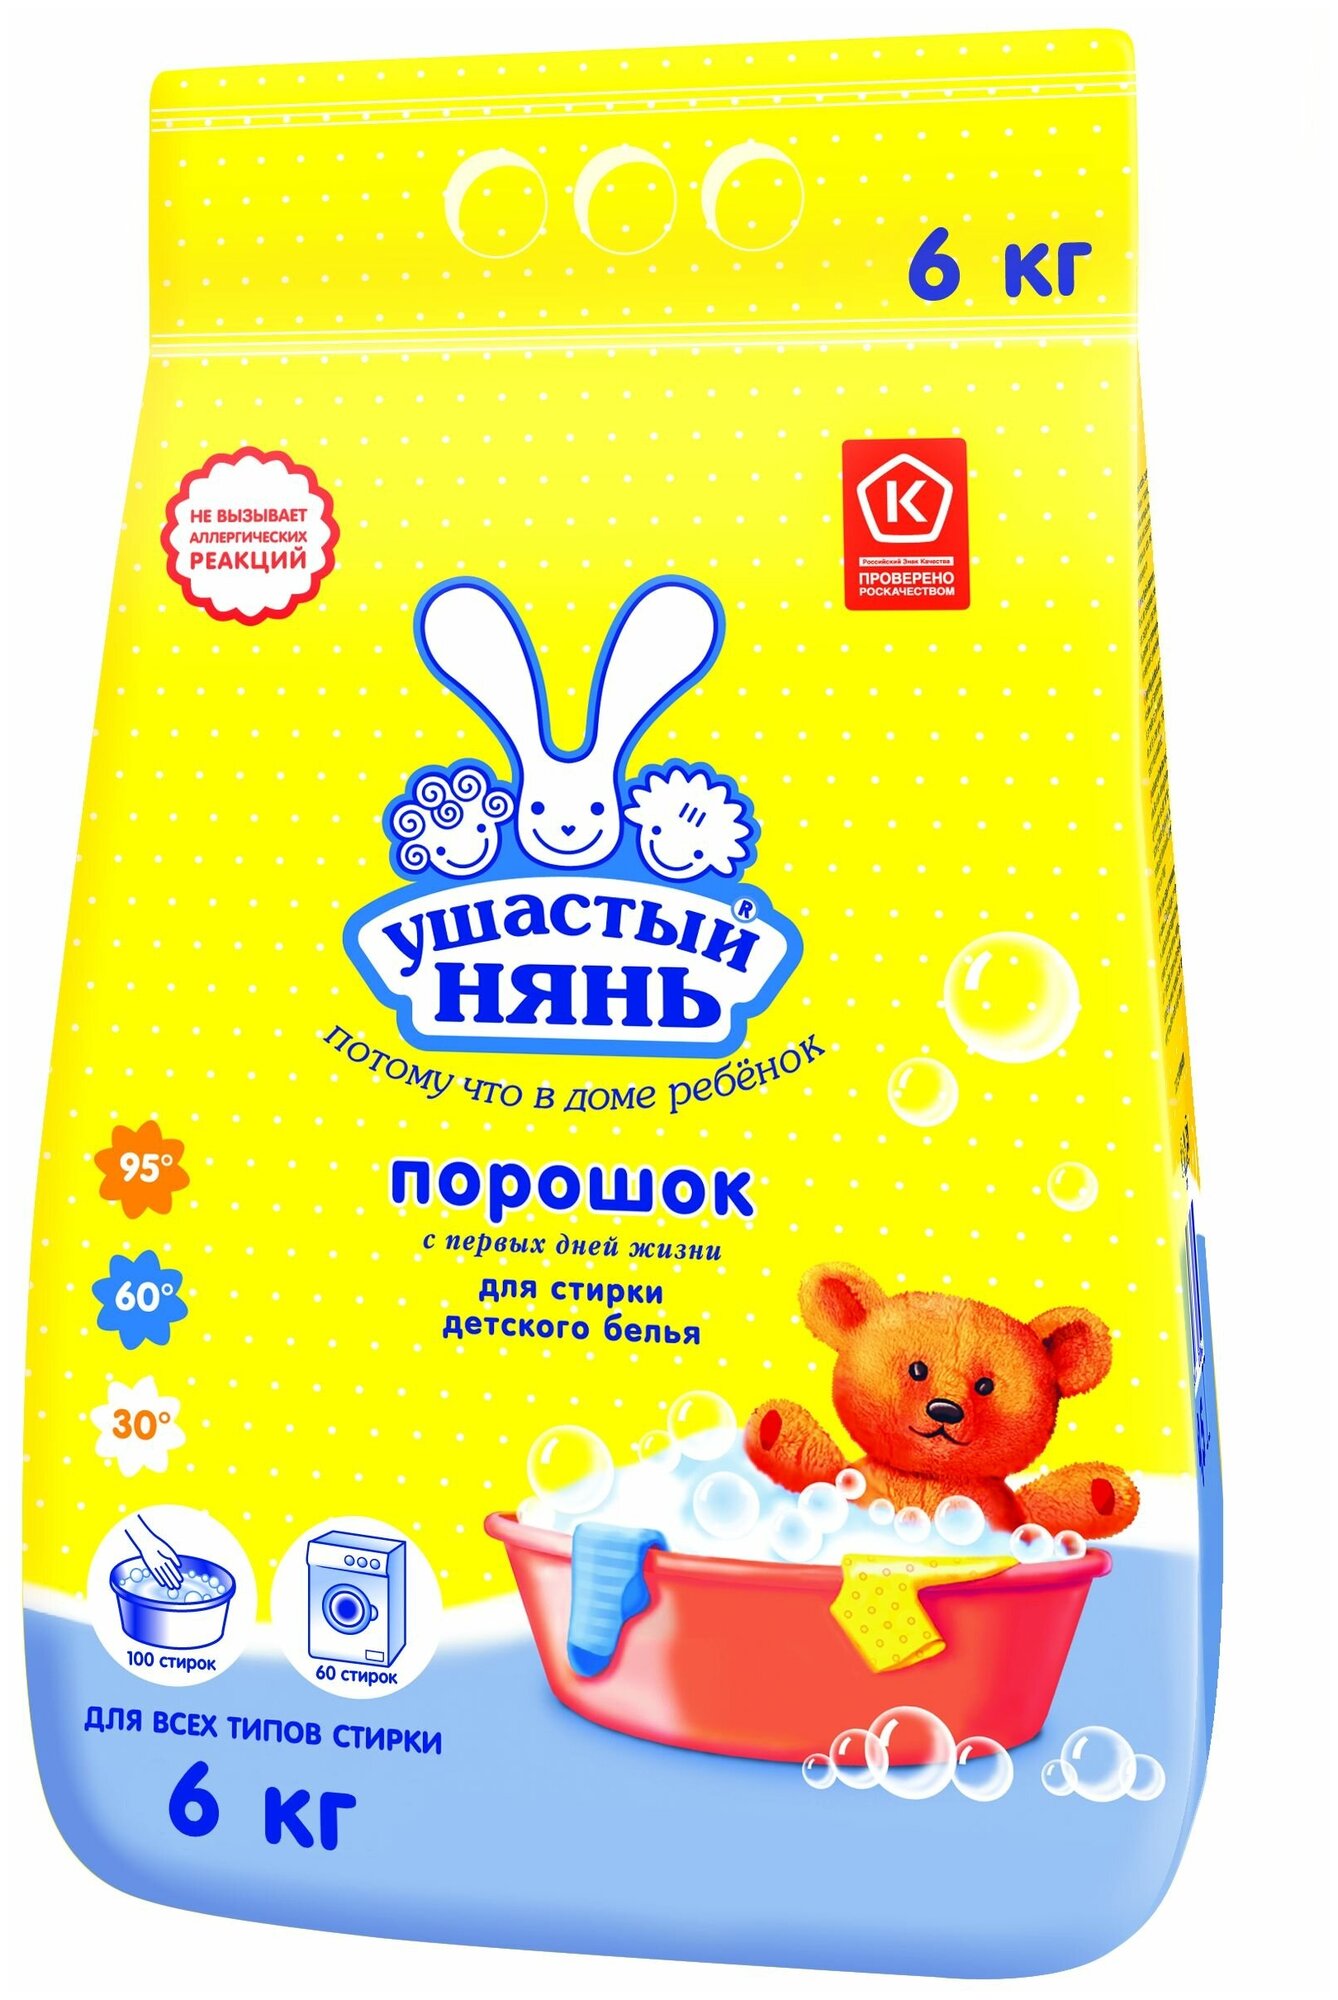 Стиральный порошок Ушастый Нянь для стирки детского белья, 4.5 кг — купить в интернет-магазине по низкой цене на Яндекс Маркете